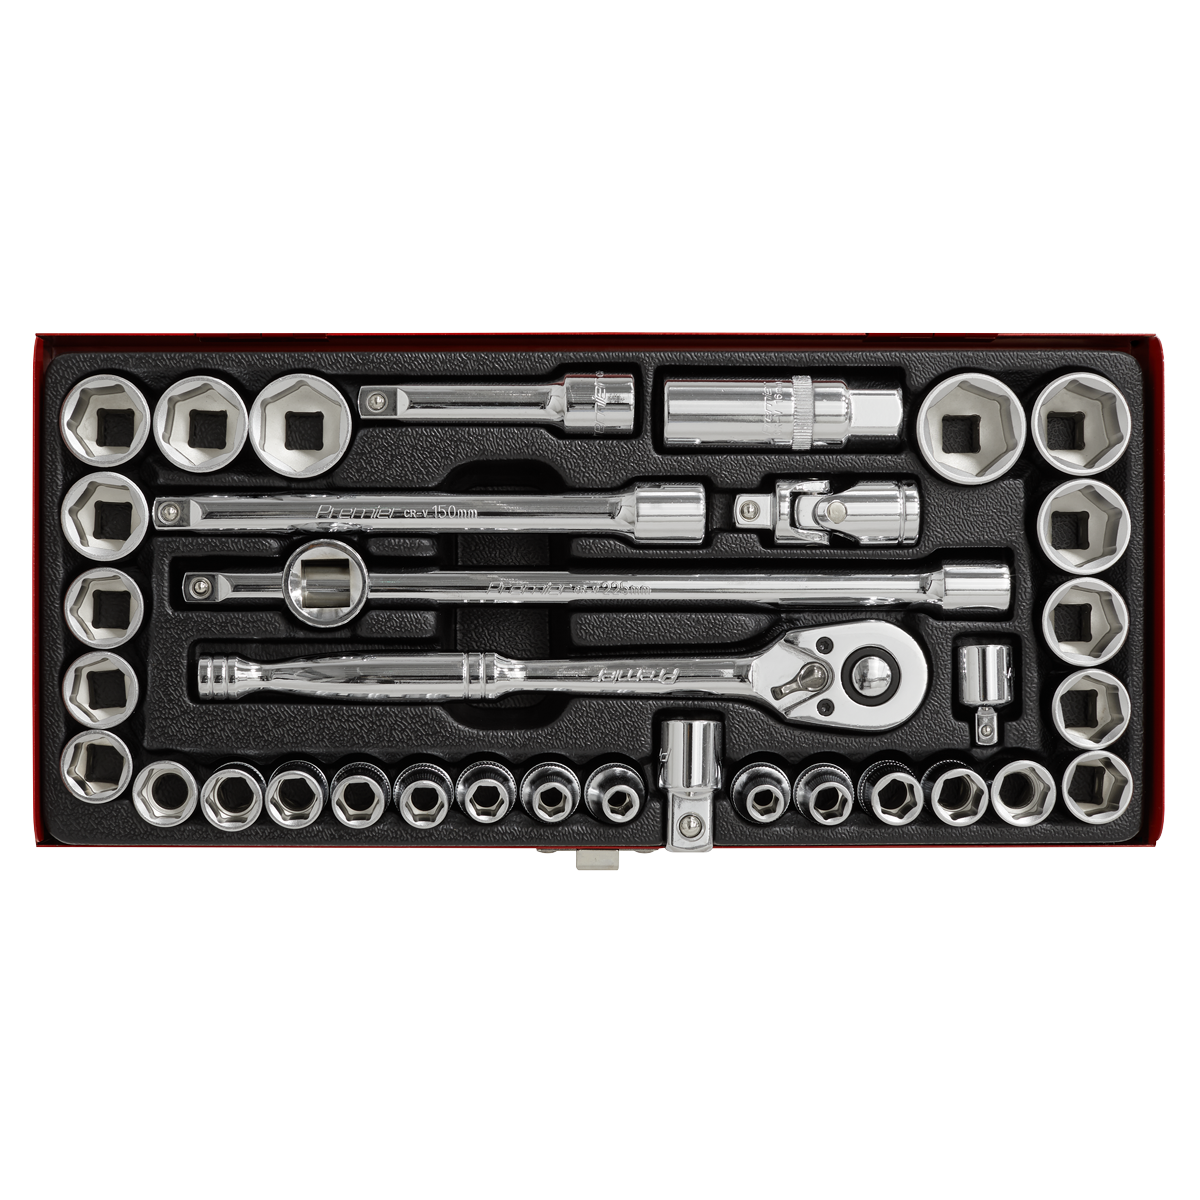 Sealey AK691 Socket Set 35pc 3/8"Sq Drive 6pt WallDrive® - Metric/Imperial